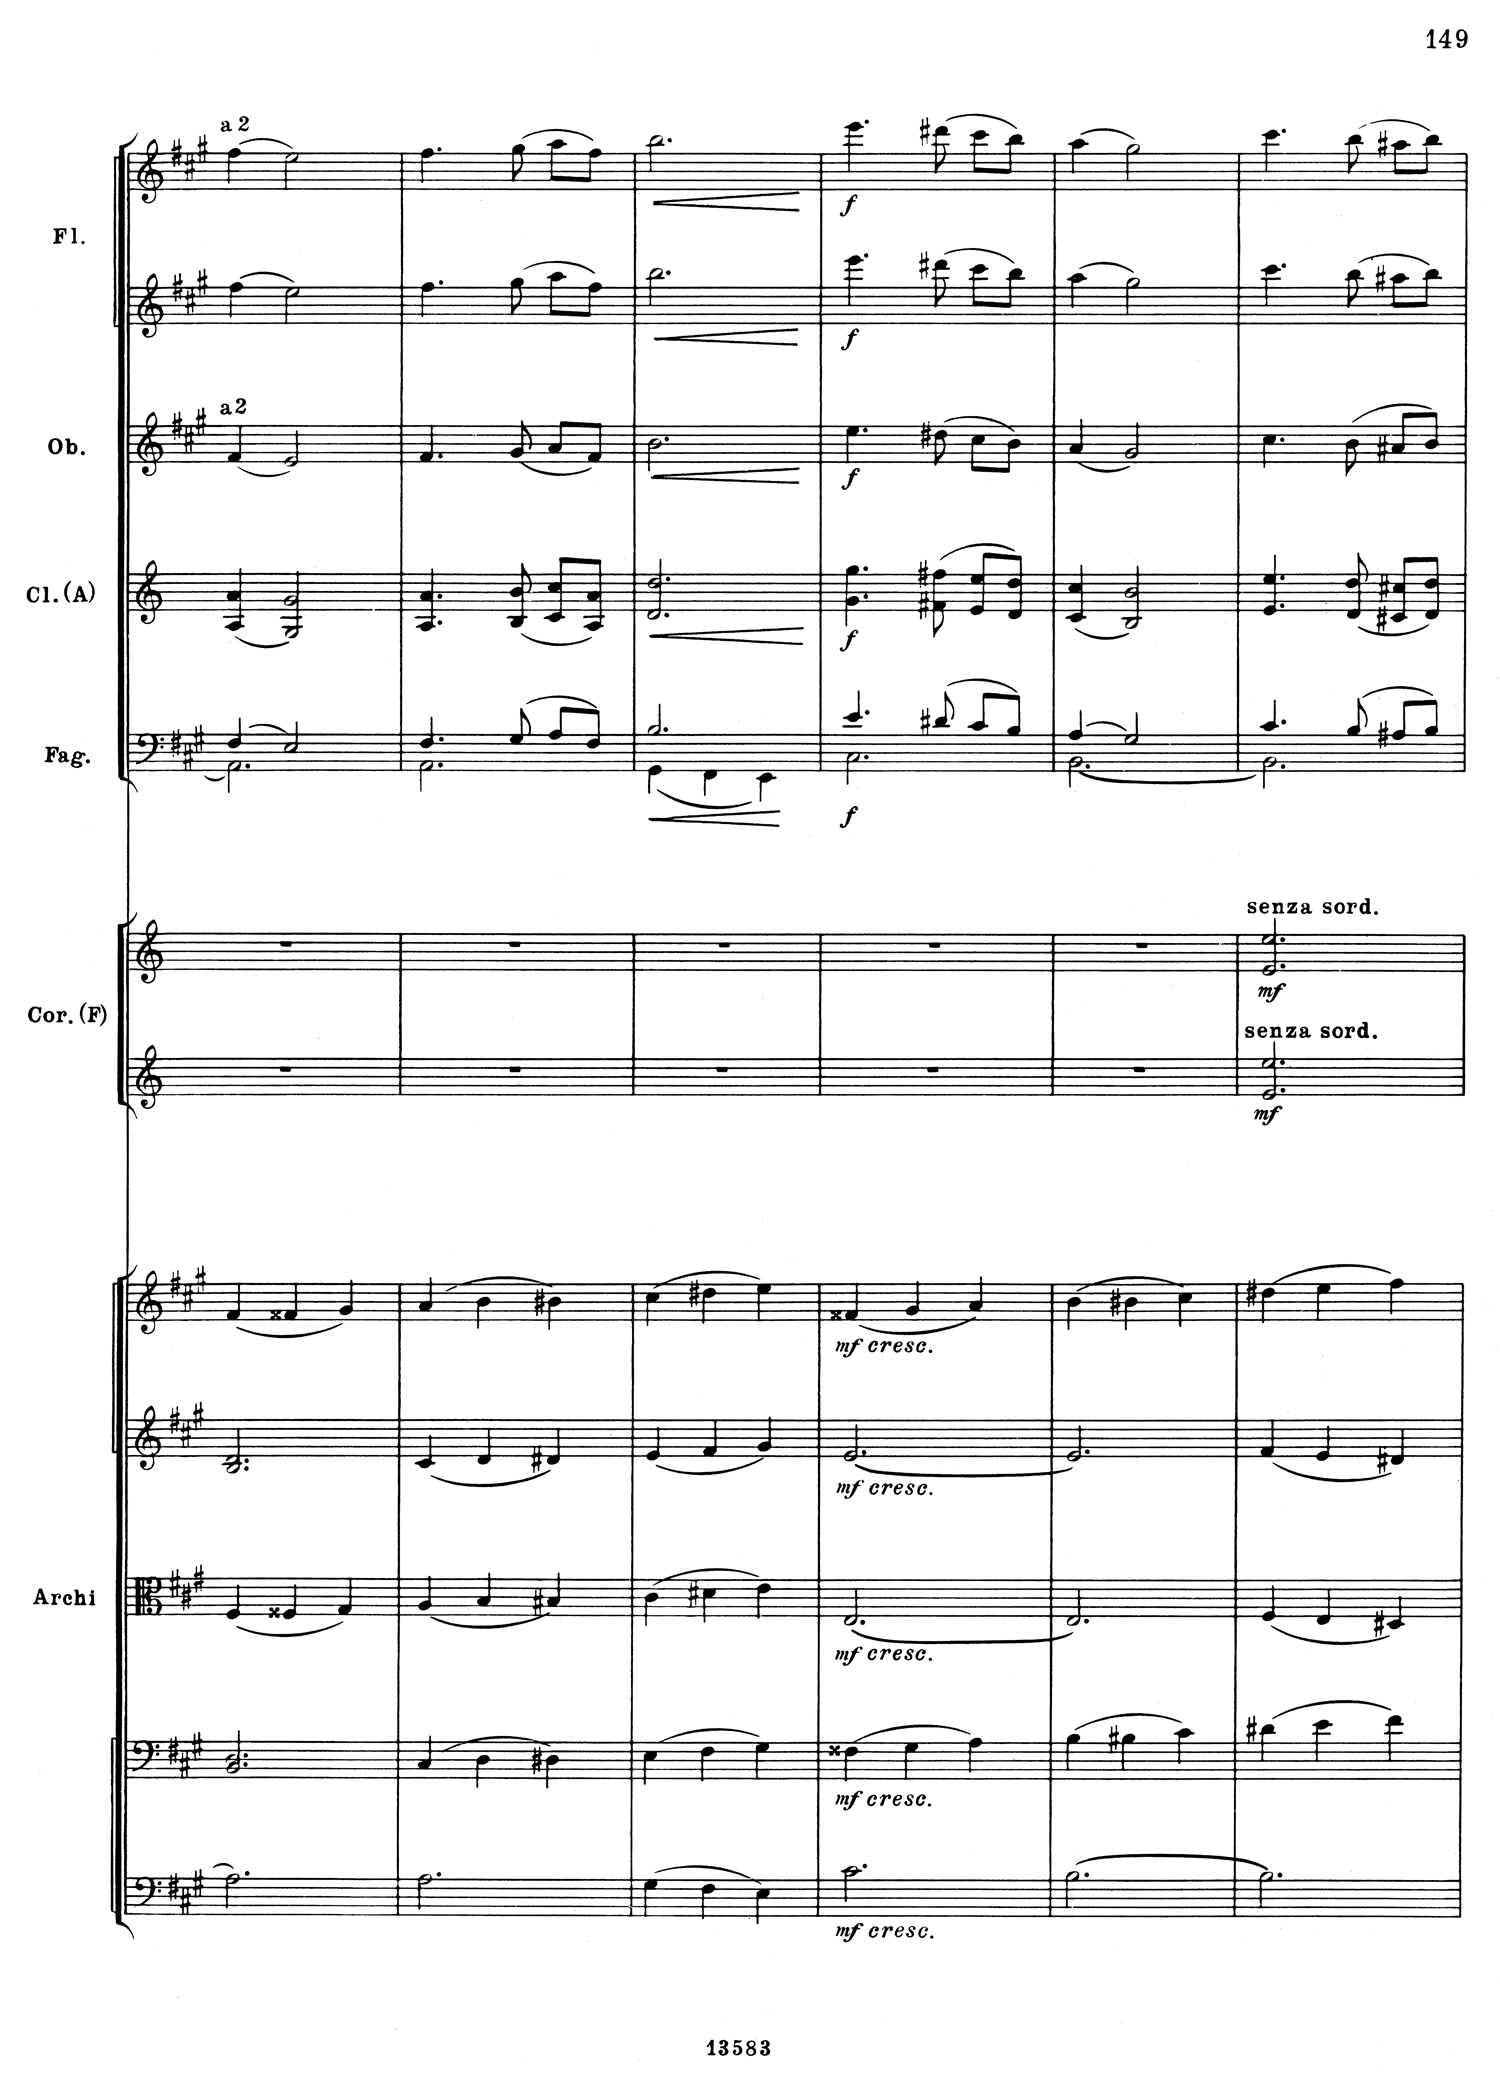 Tchaikovsky 5 Mvt 3 Score 4.jpg